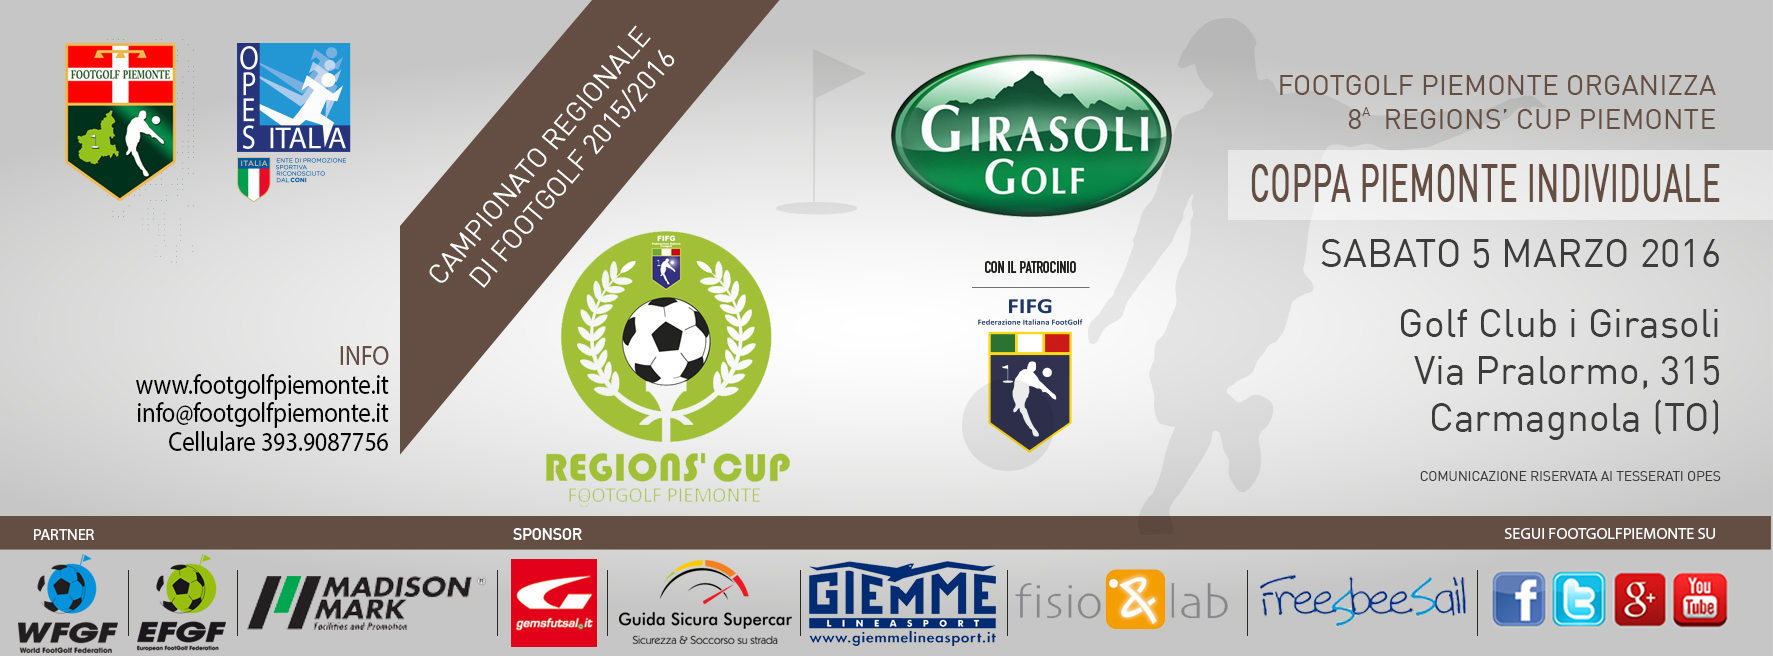 Locandina 8 tappa Regions' Cup Footgolf Piemonte Carmagnola TO sabato 5 marzo 2016